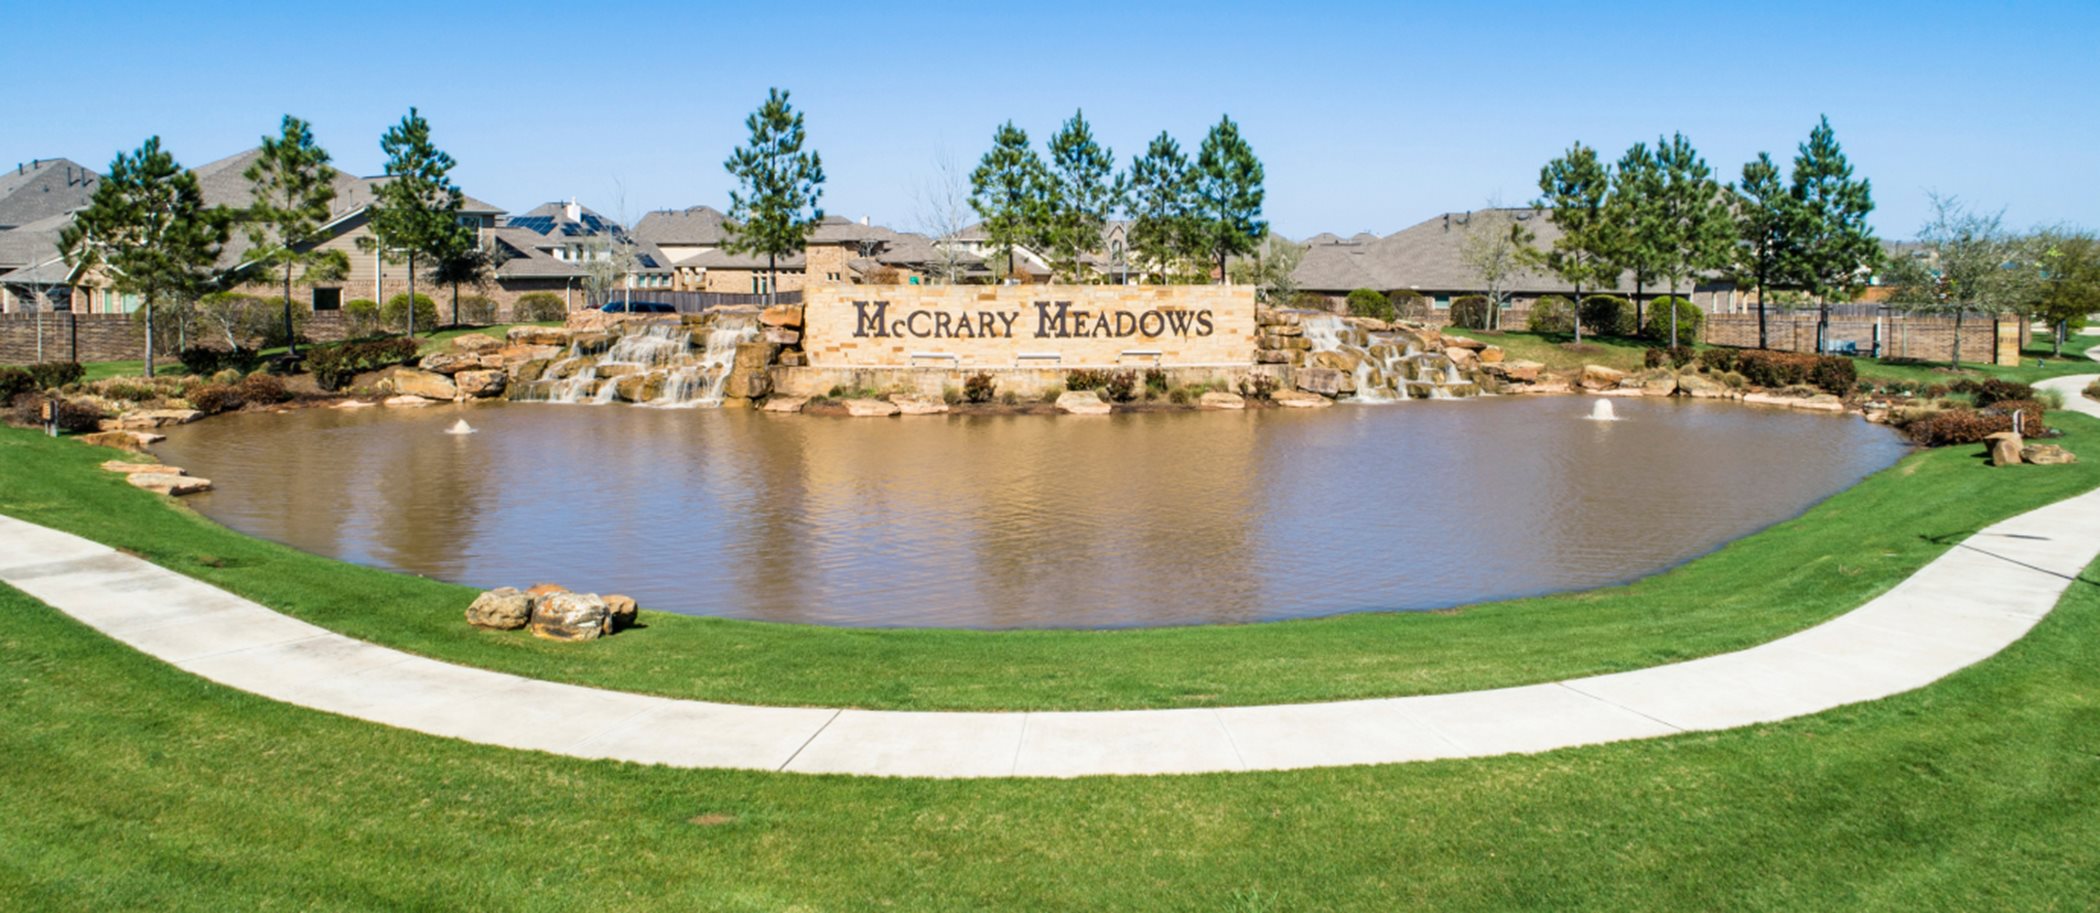 McCrary Meadows Entrance